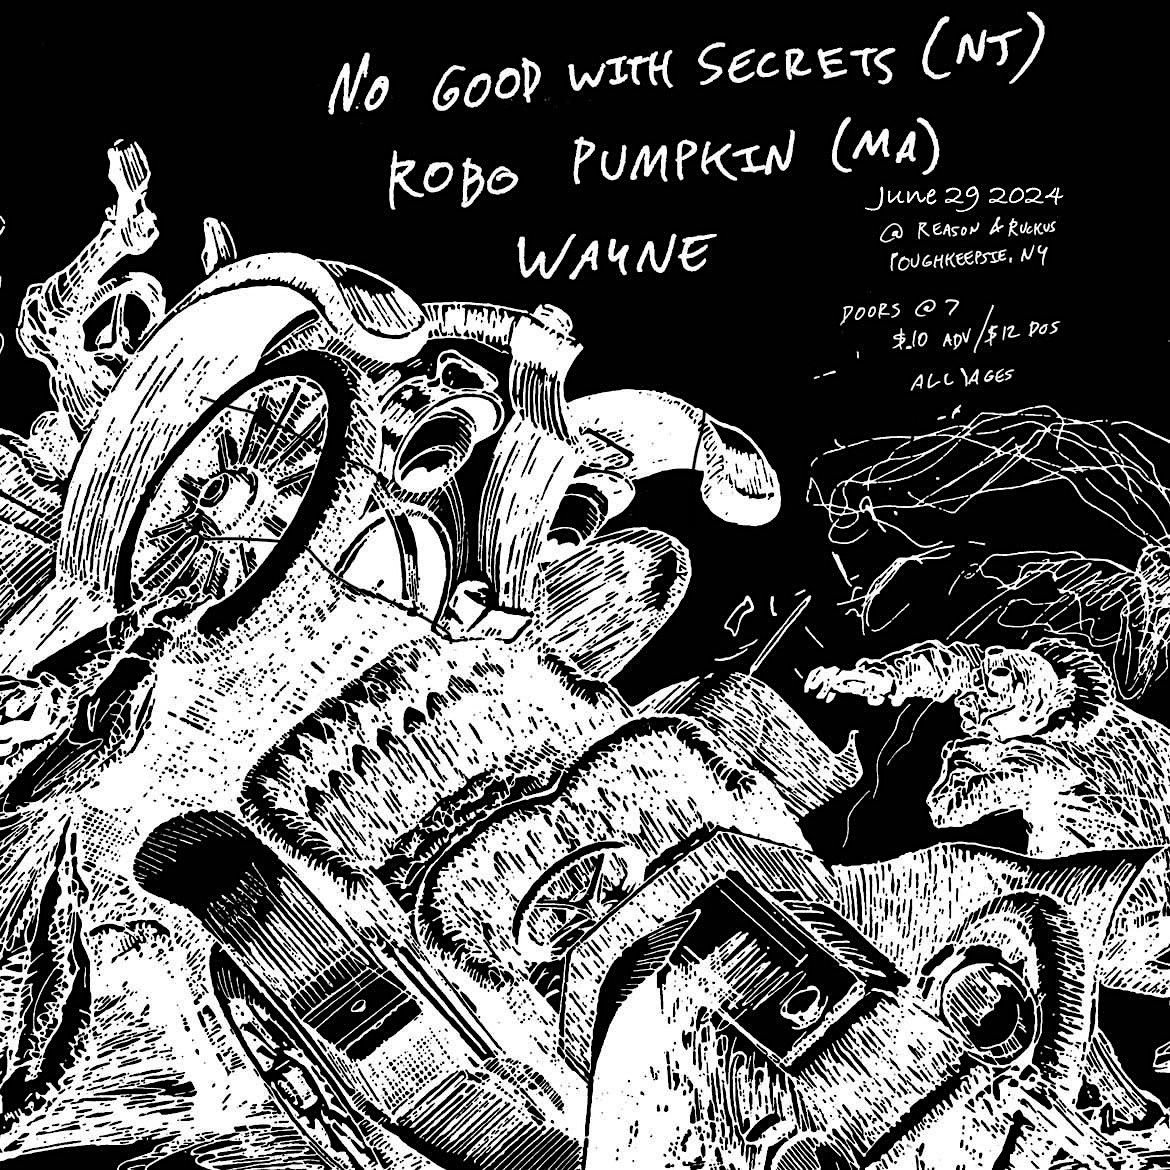 Doors At Seven Presents No Good With Secrets, Robo Pumpkin, WAYNE at R+R